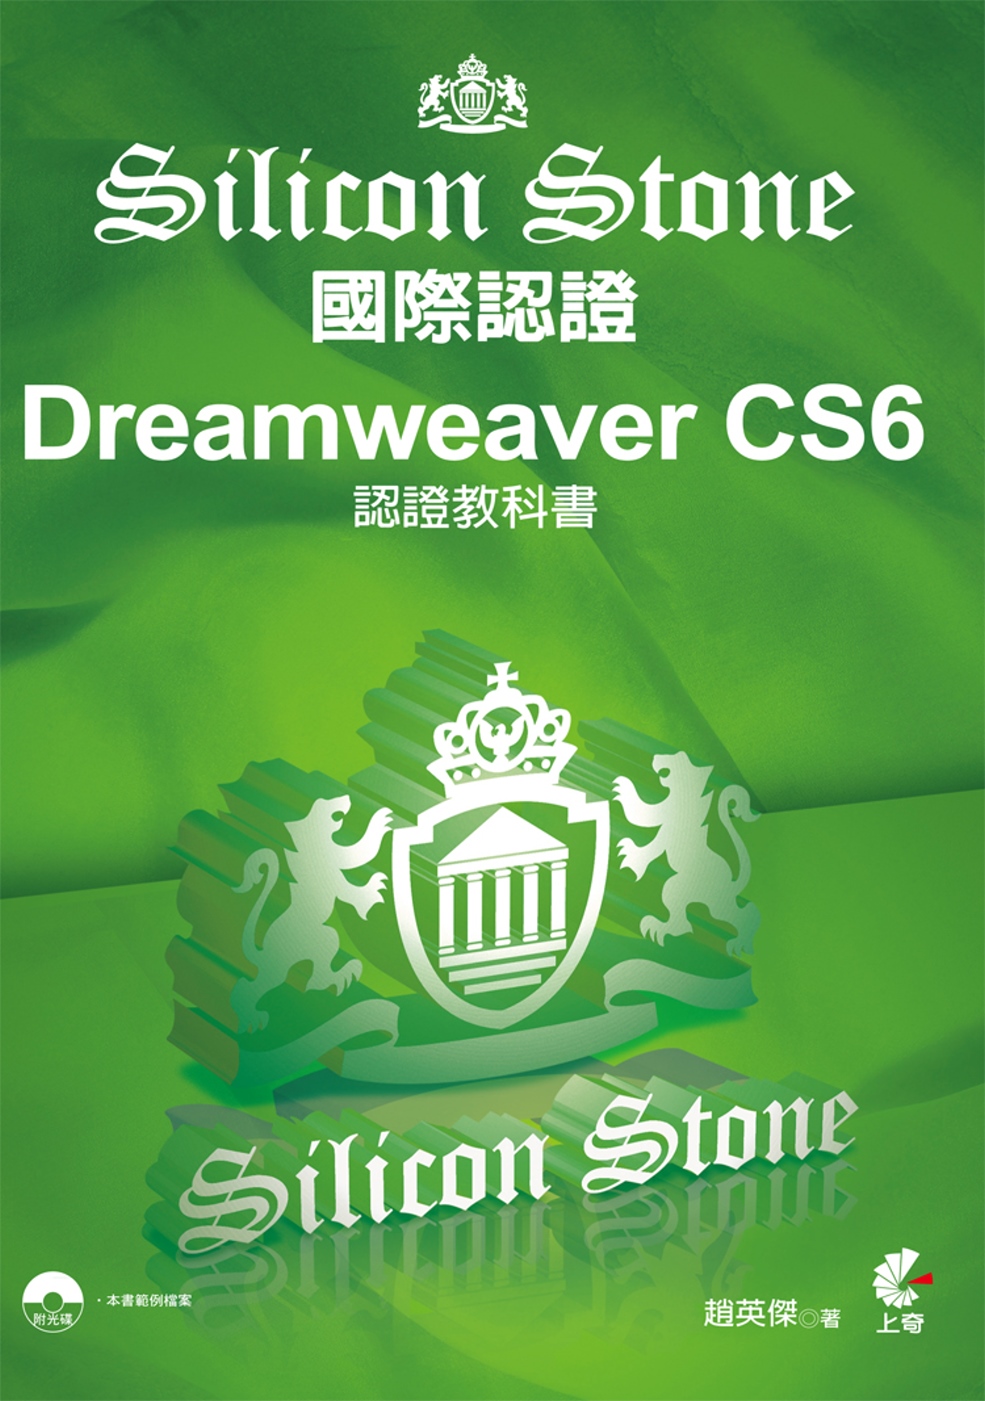 Dreamweaver CS6 Silicon Stone ...